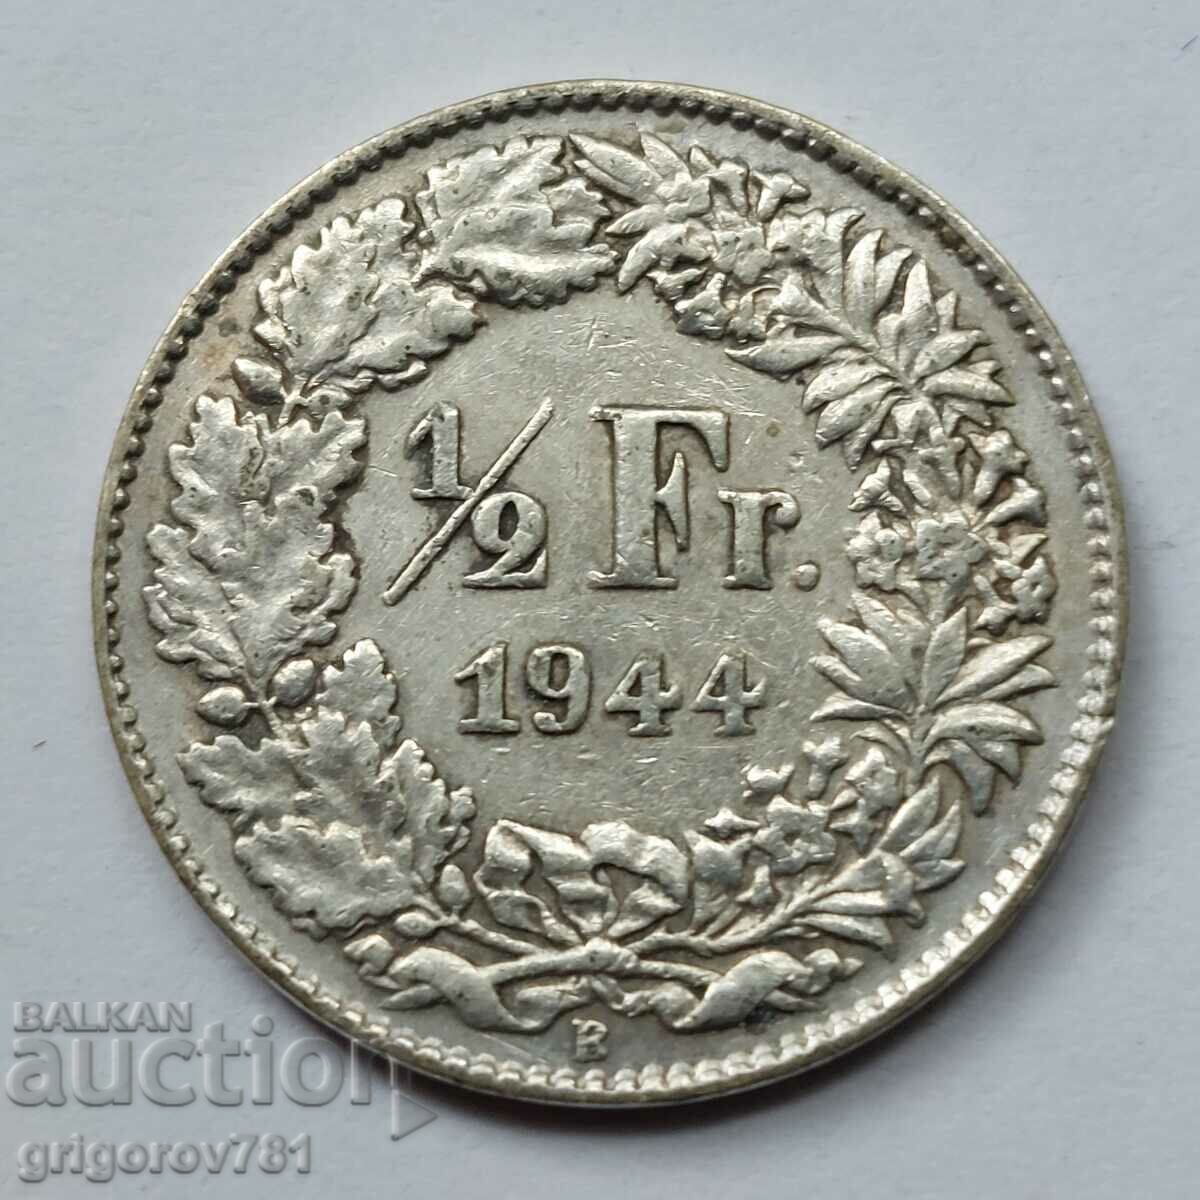 Ασημένιο φράγκο 1/2 Ελβετία 1944 Β - Ασημένιο νόμισμα #39